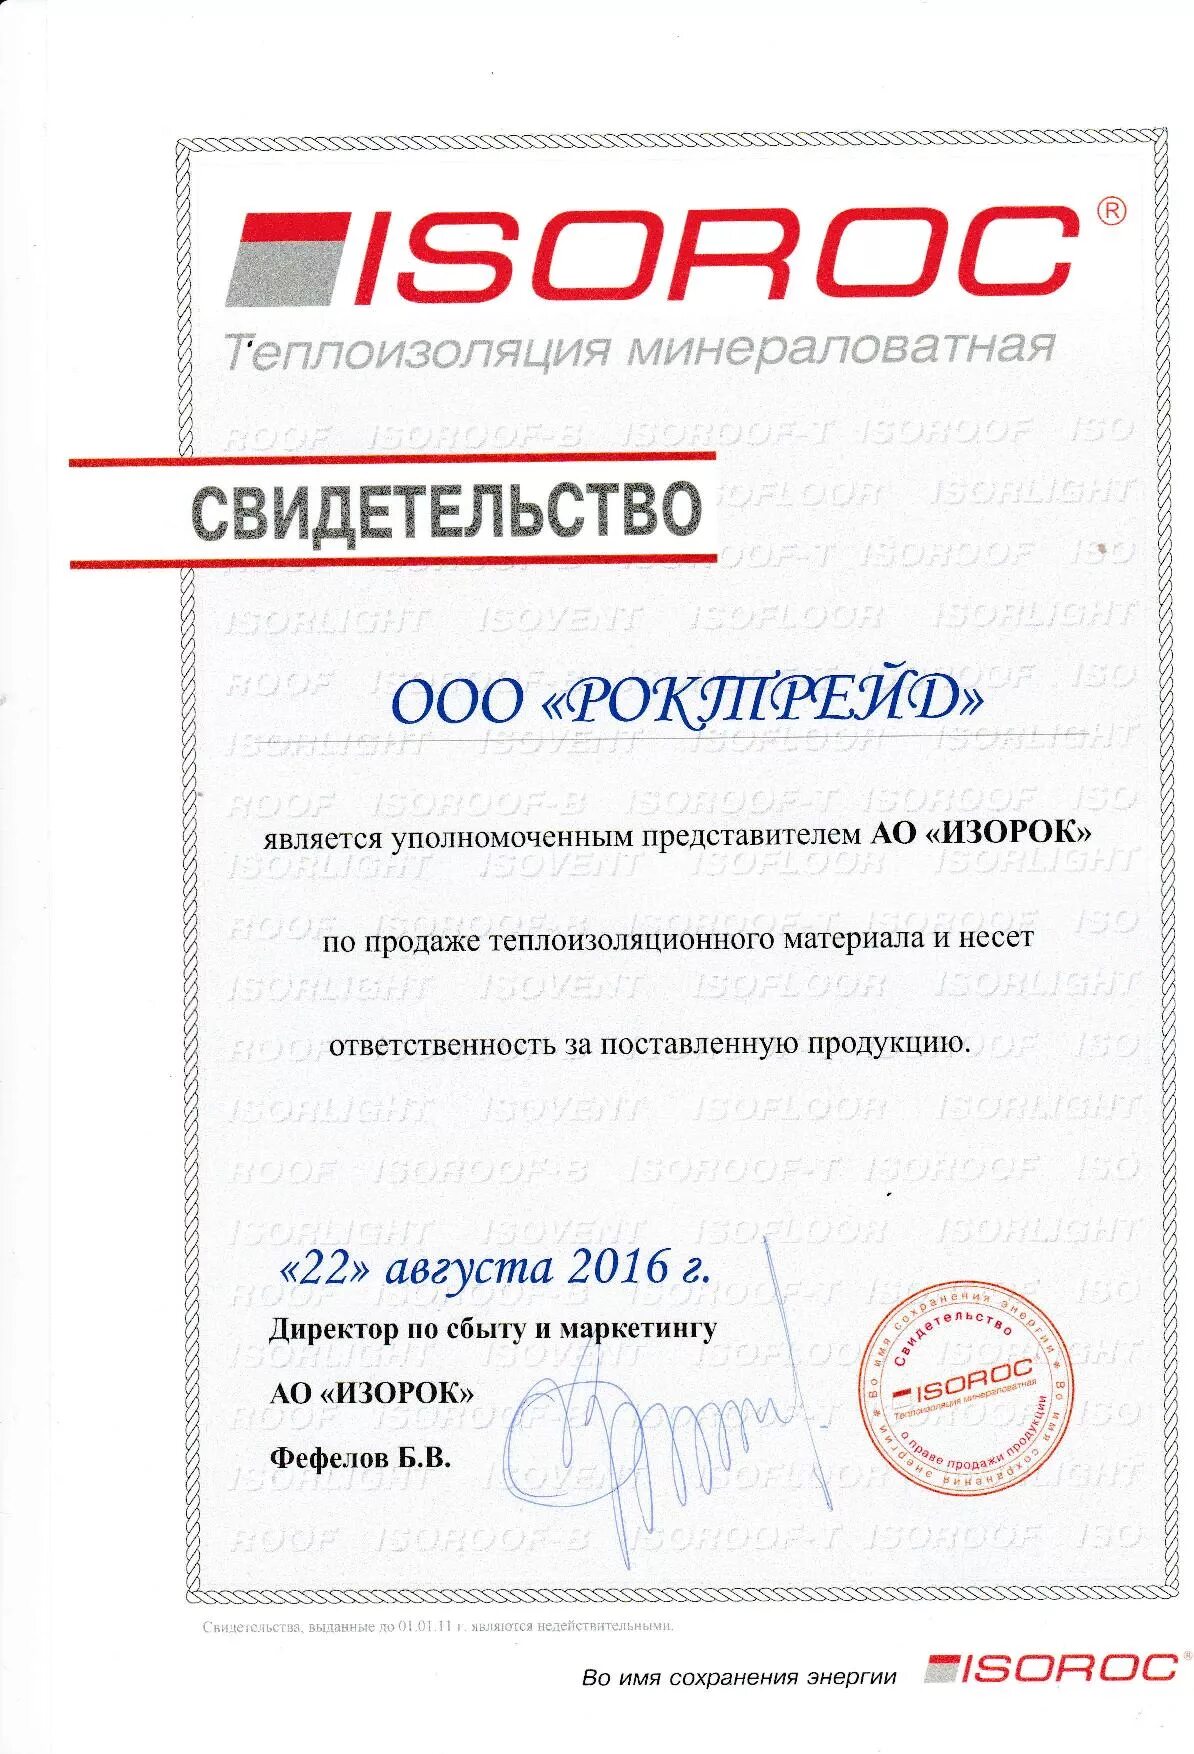 Как получить сертификат вб на 14 февраля. Сертификат на утеплитель ISOROC. Сертификат качества на утеплитель ISOROC.